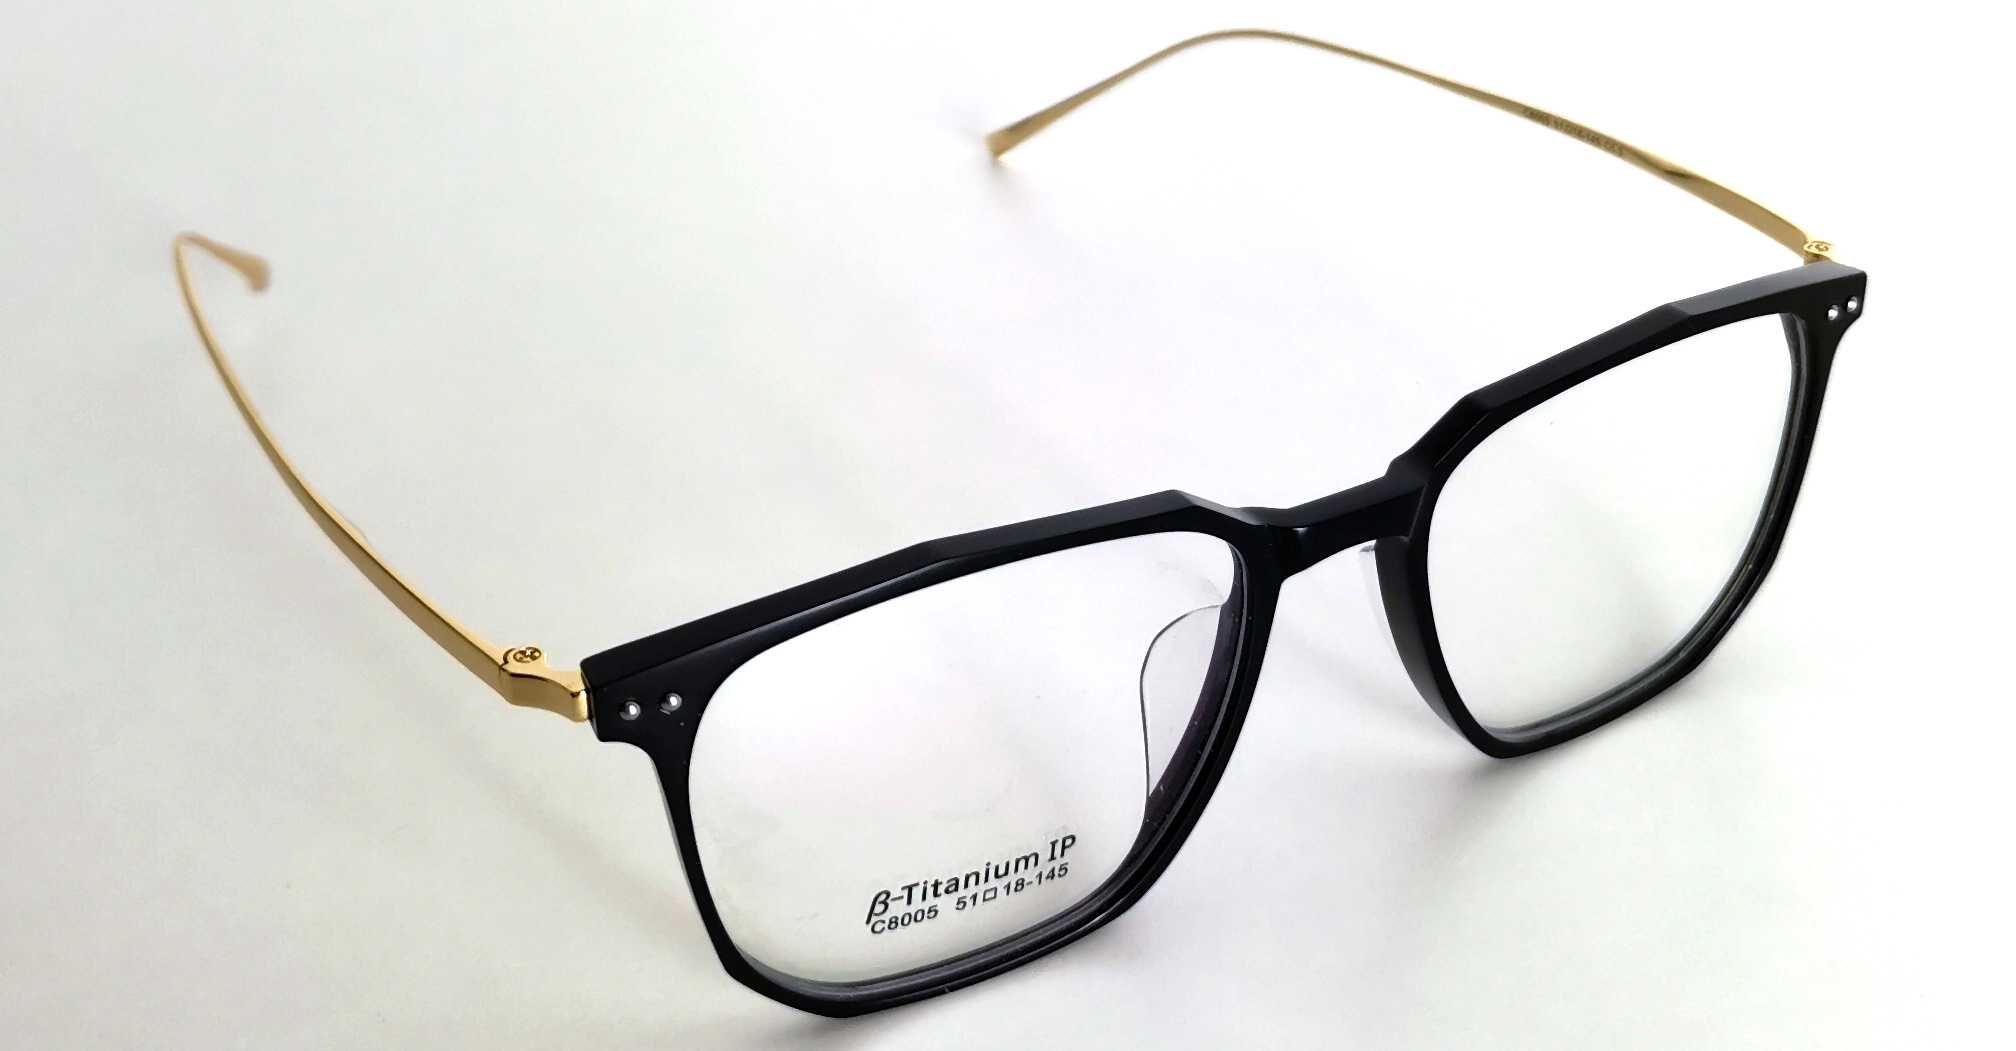 Oprawki do okularów B-Titantium Okulary korekcyjne -OKAZJA NAJTANIEJ